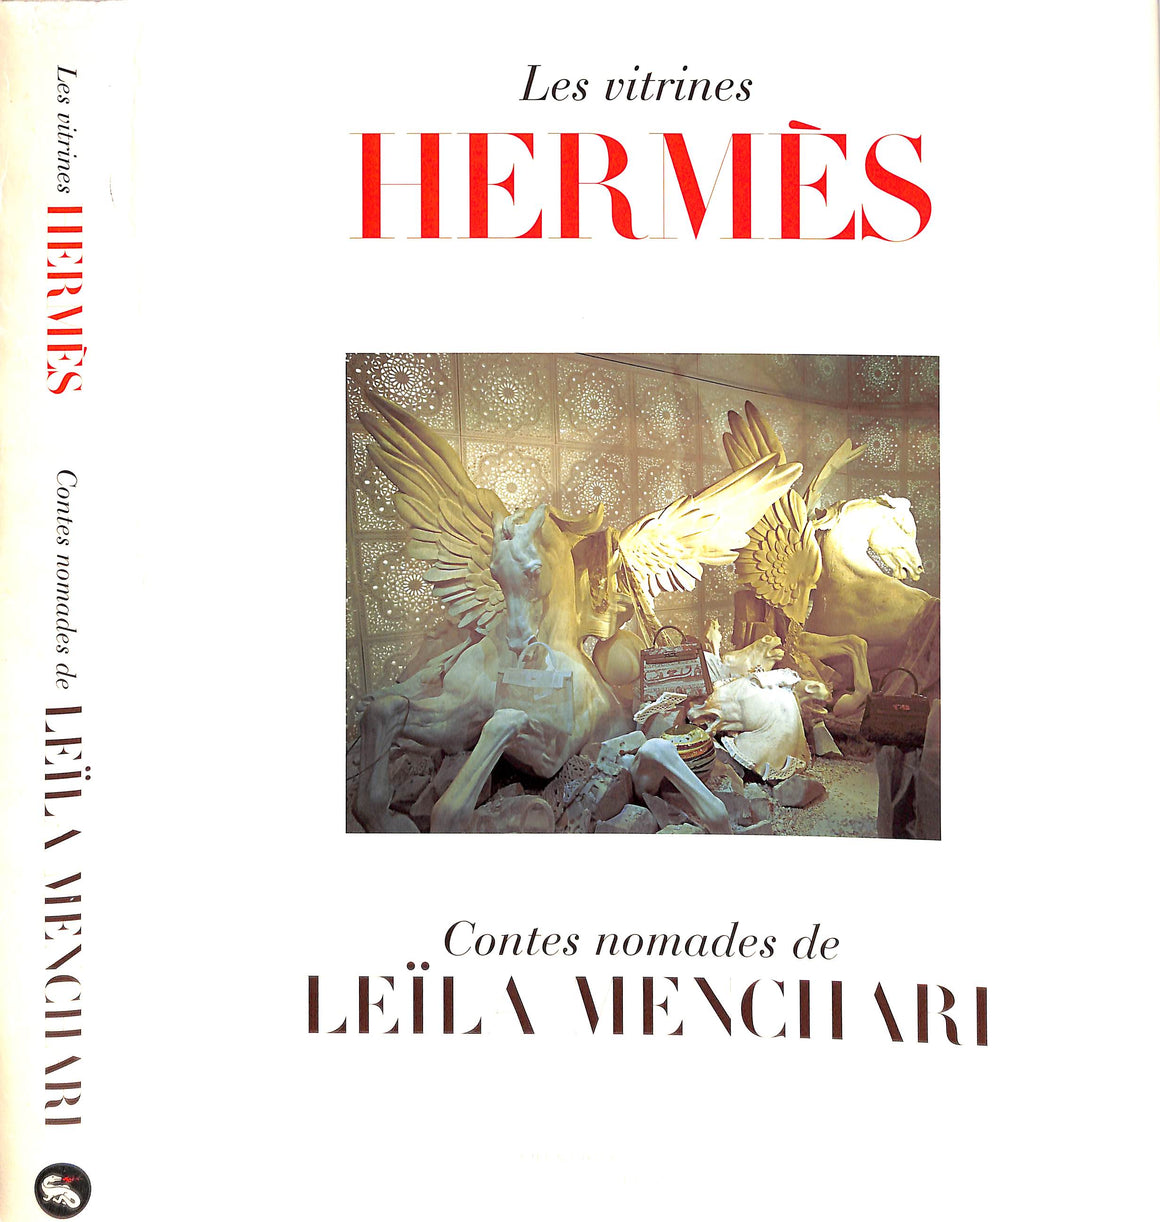 "Les Vitrines Hermes Contes Nomades De Leila Menchari" GAZIER, Michele [texte de]